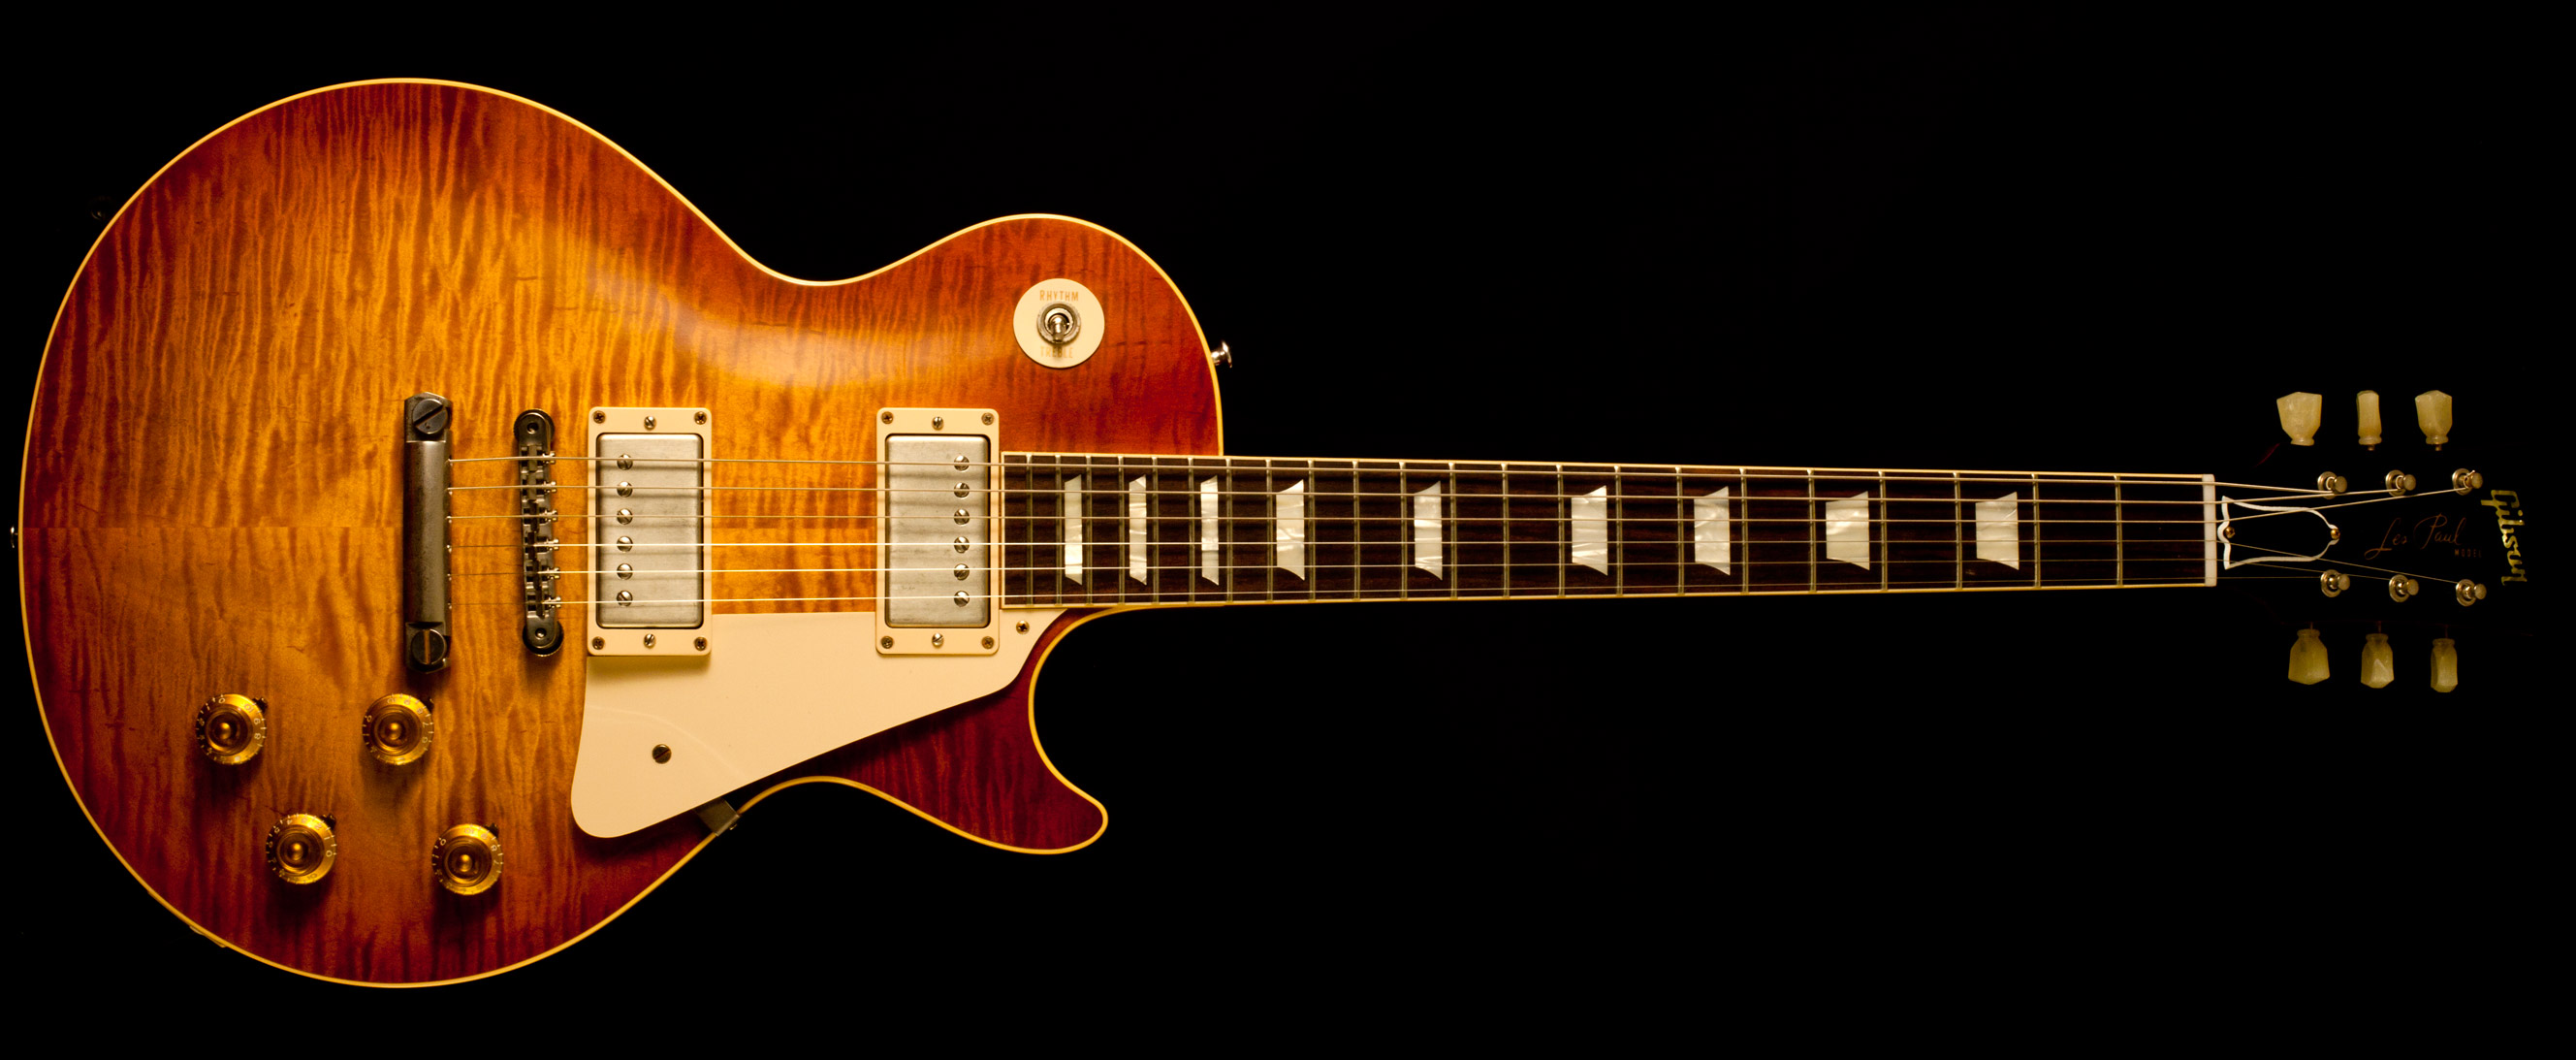 Gibson Les Paul 59 VOS 2014 Sunrise Tea Burst Guitar For Sale Gitarren ...